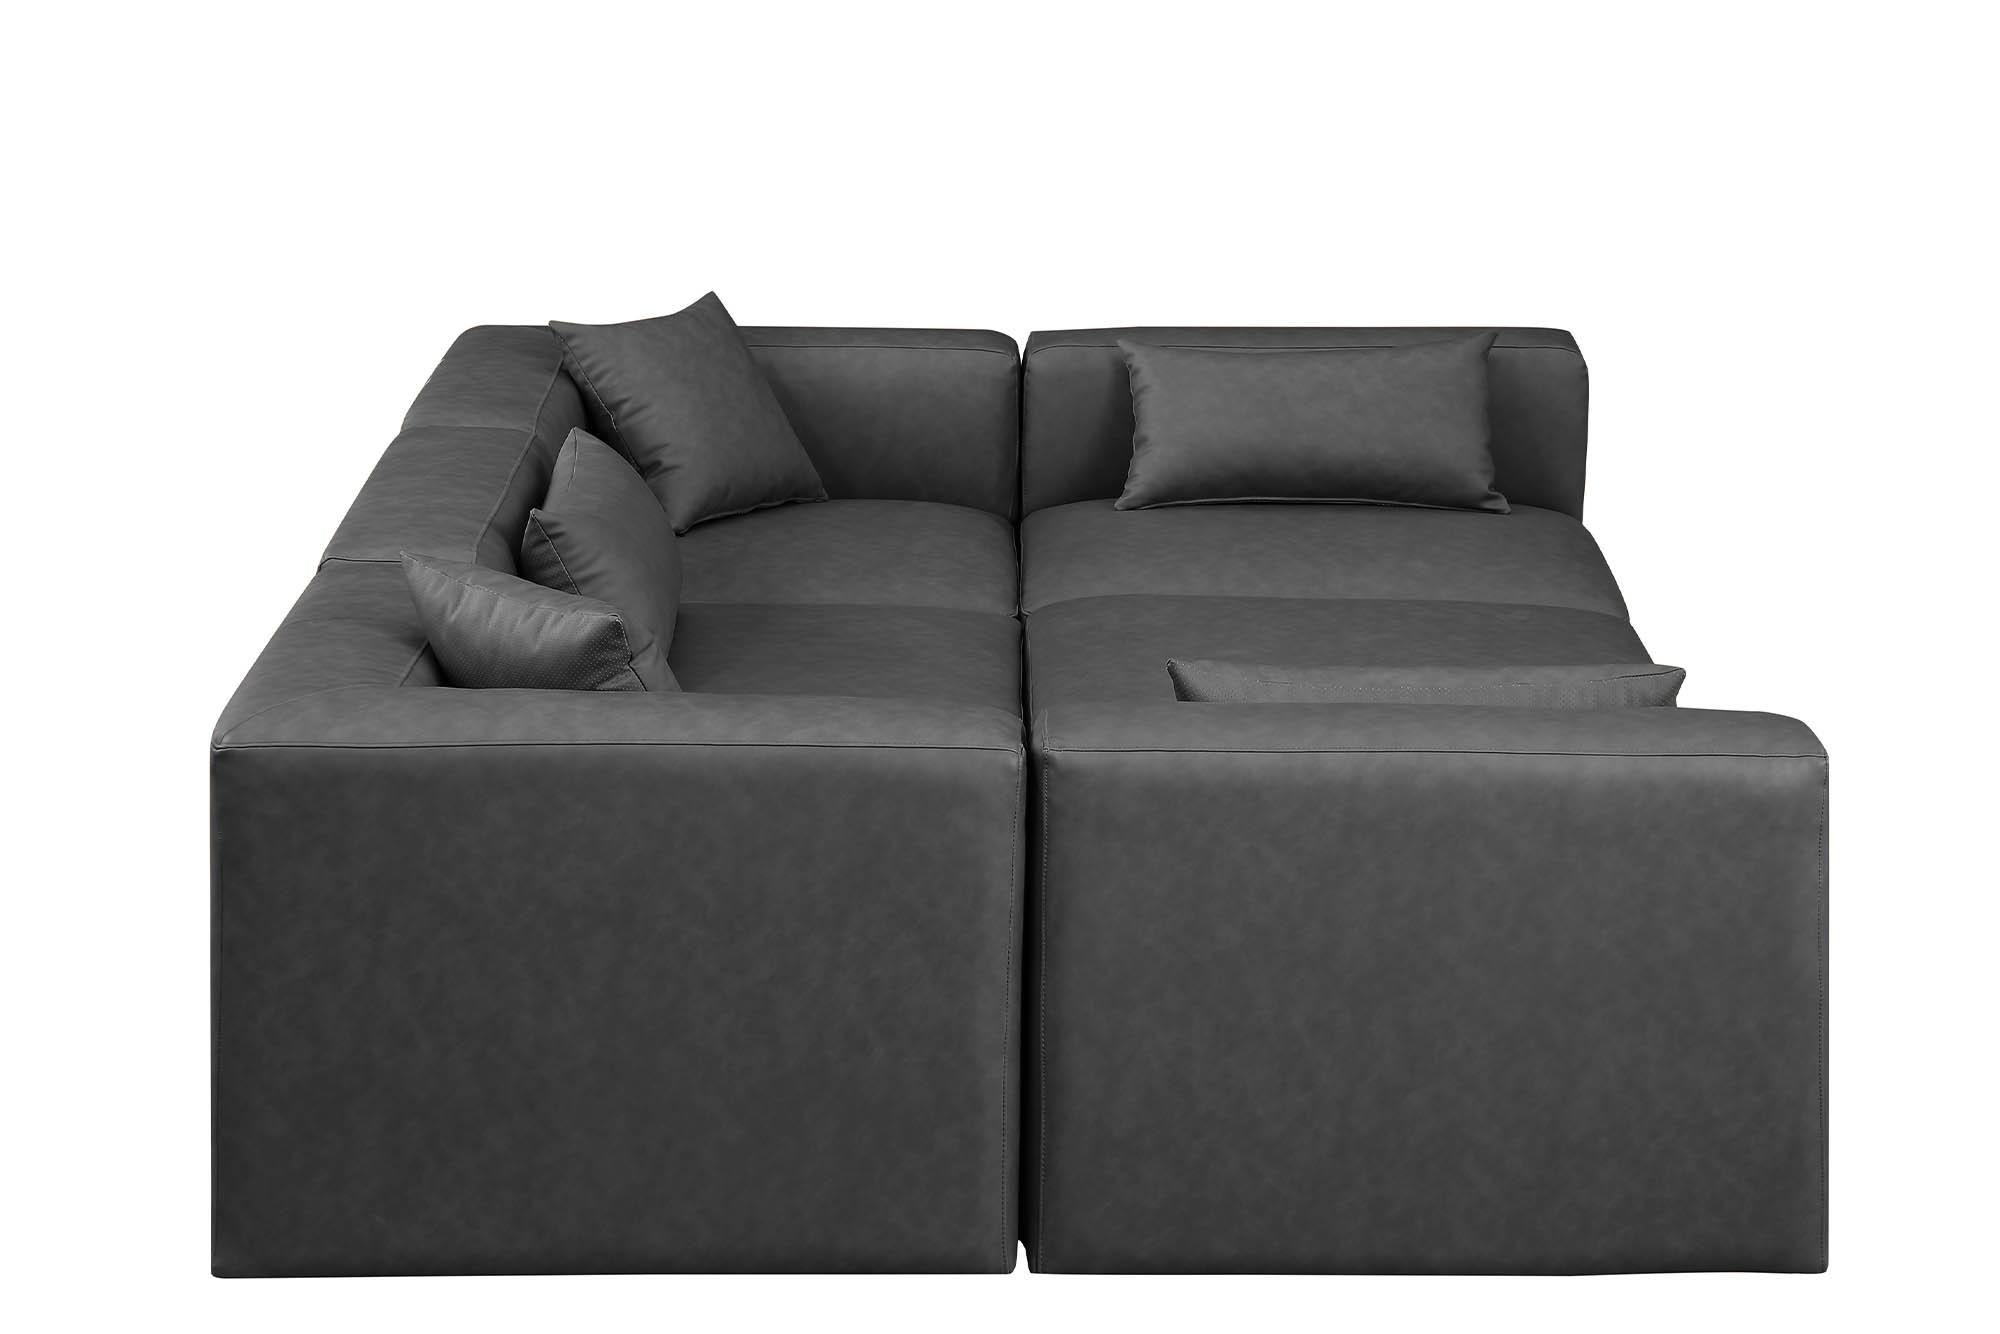 

    
Meridian Furniture CUBE 668Grey-Sec6C Modular Sectional Sofa Gray 668Grey-Sec6C
